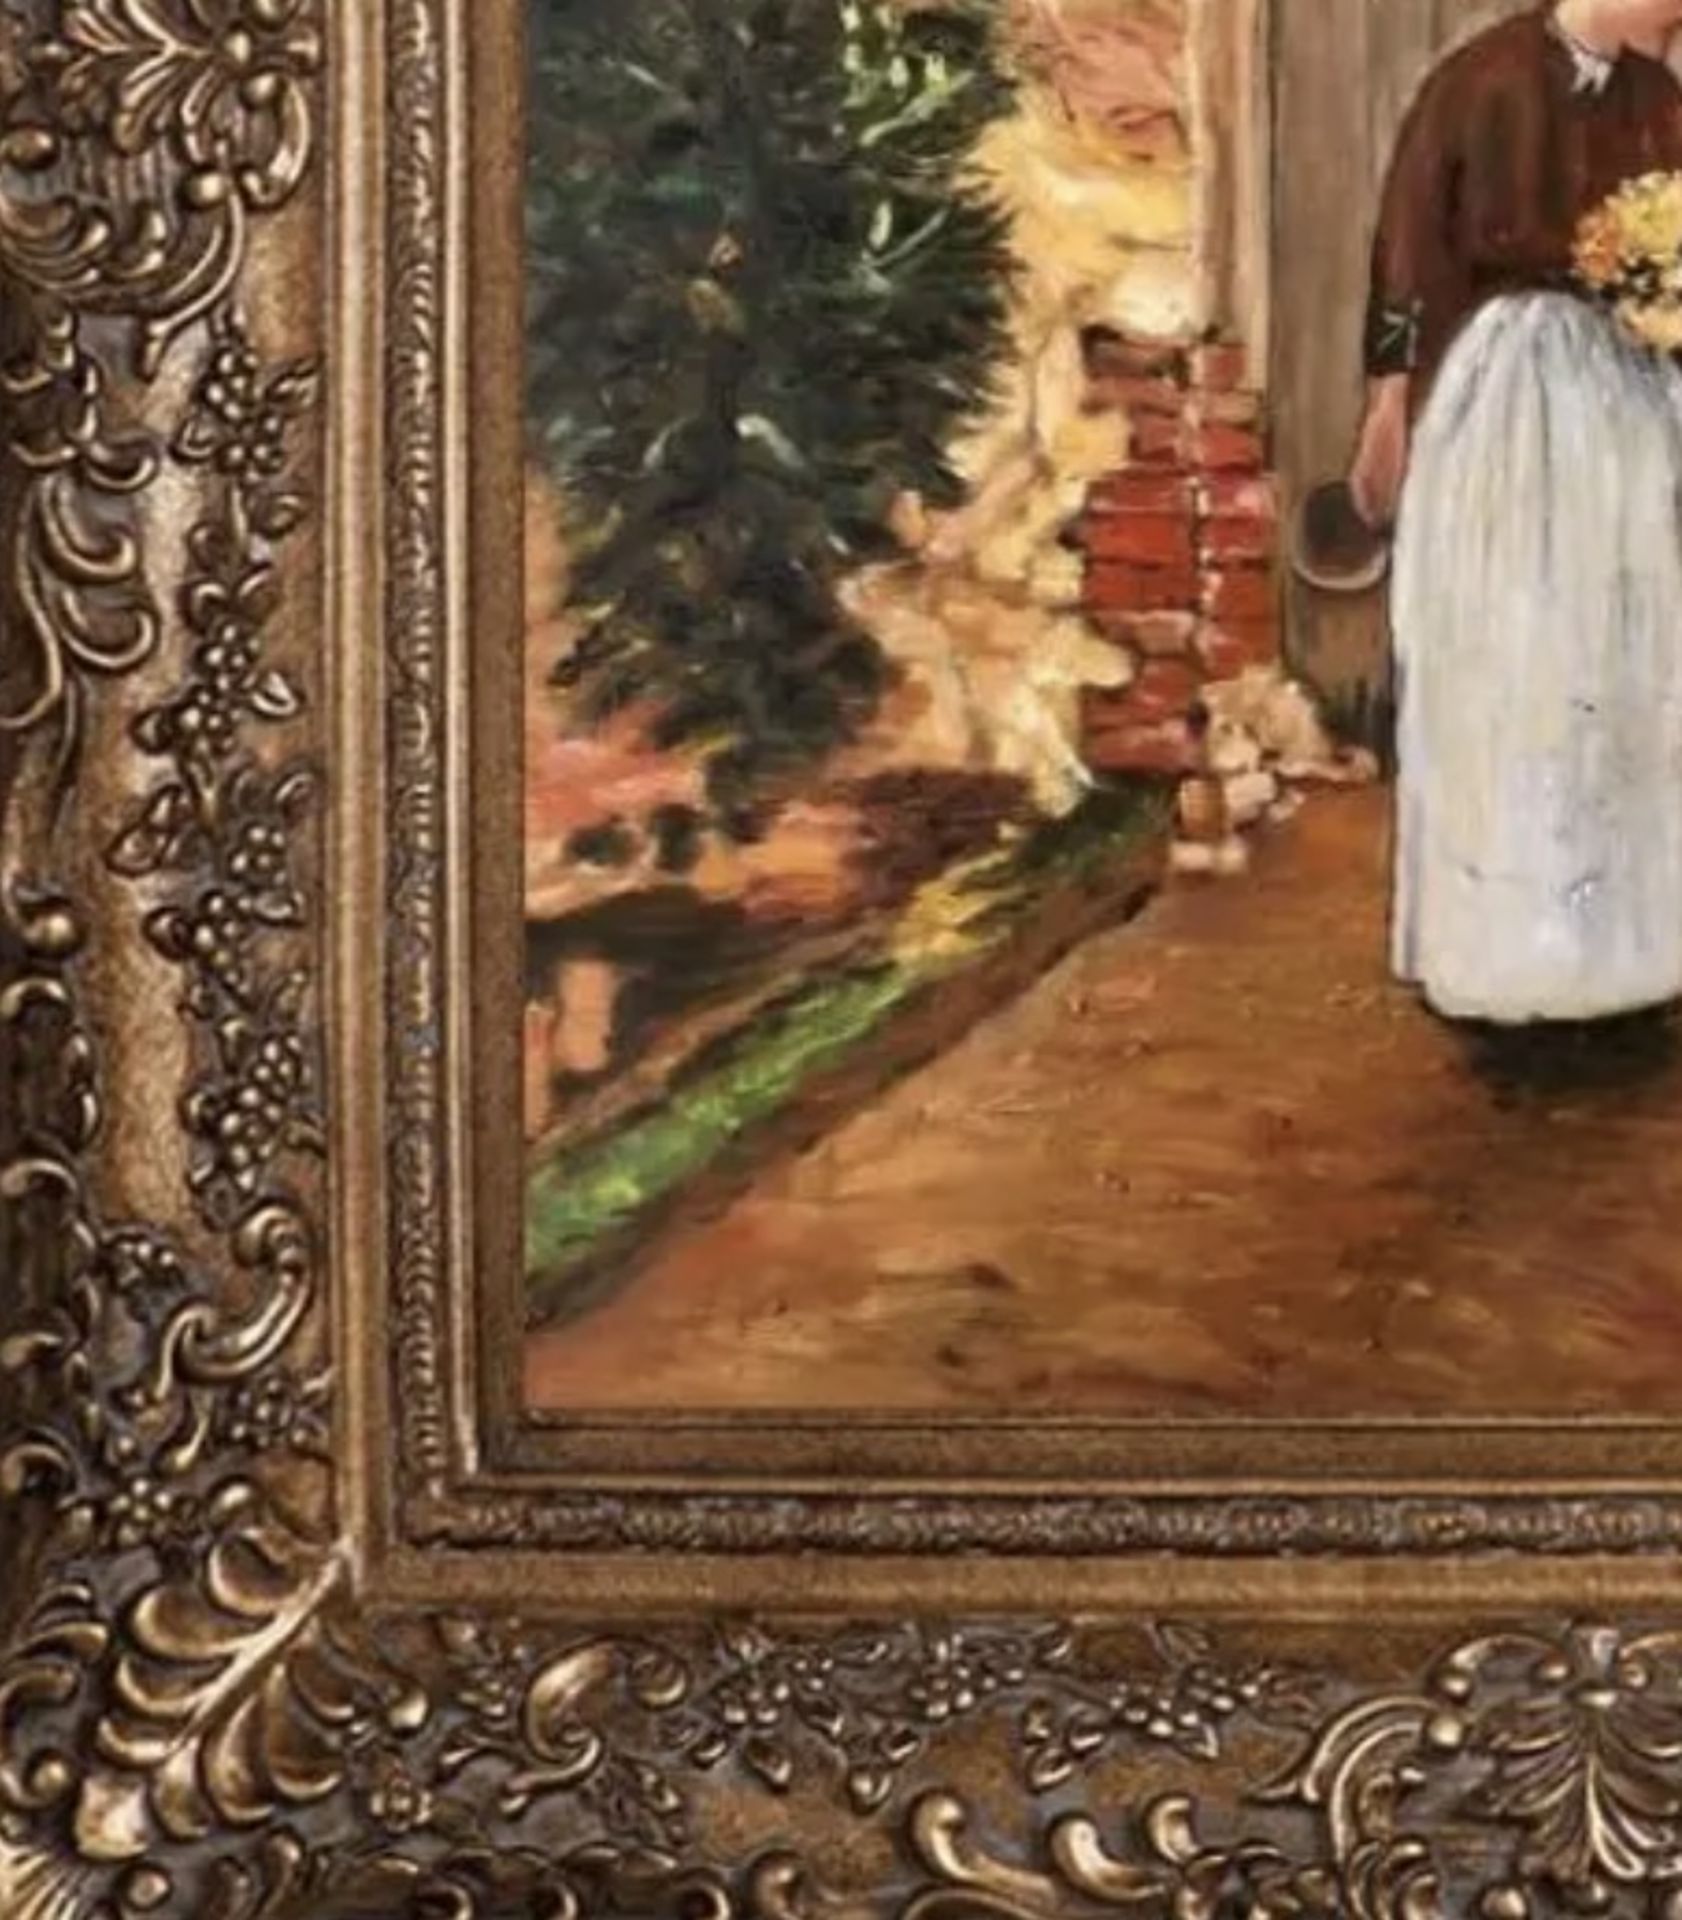 Childe Hassam "The Garden Door, 1888" Oil Painting, After - Bild 5 aus 5